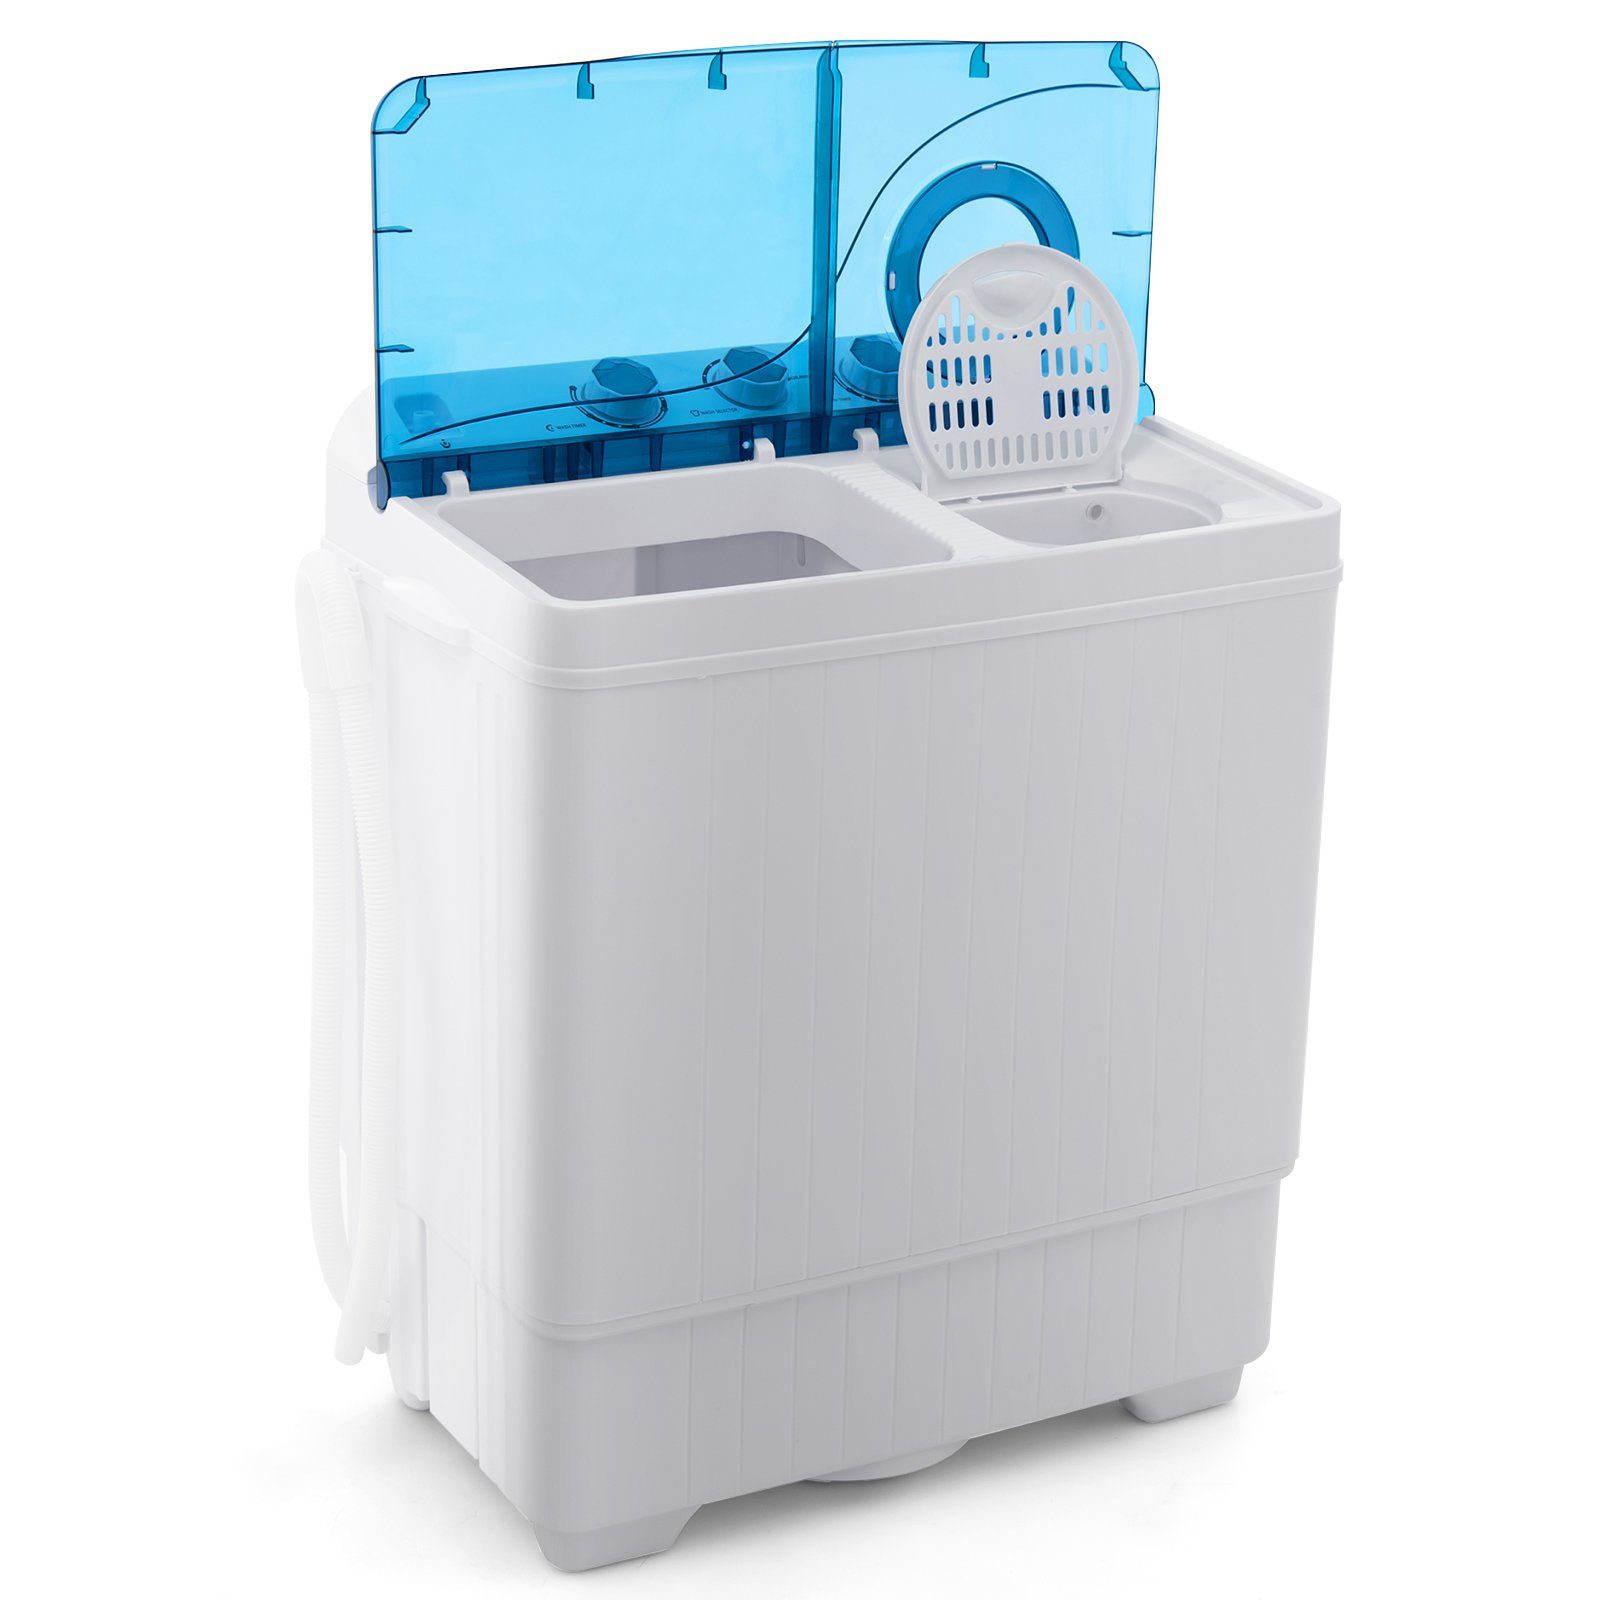 COSTWAY Waschmaschine Toplader 1320 kg, 6.5 FP10366DE/XPB65-2368S, Blau, U/min Weiß